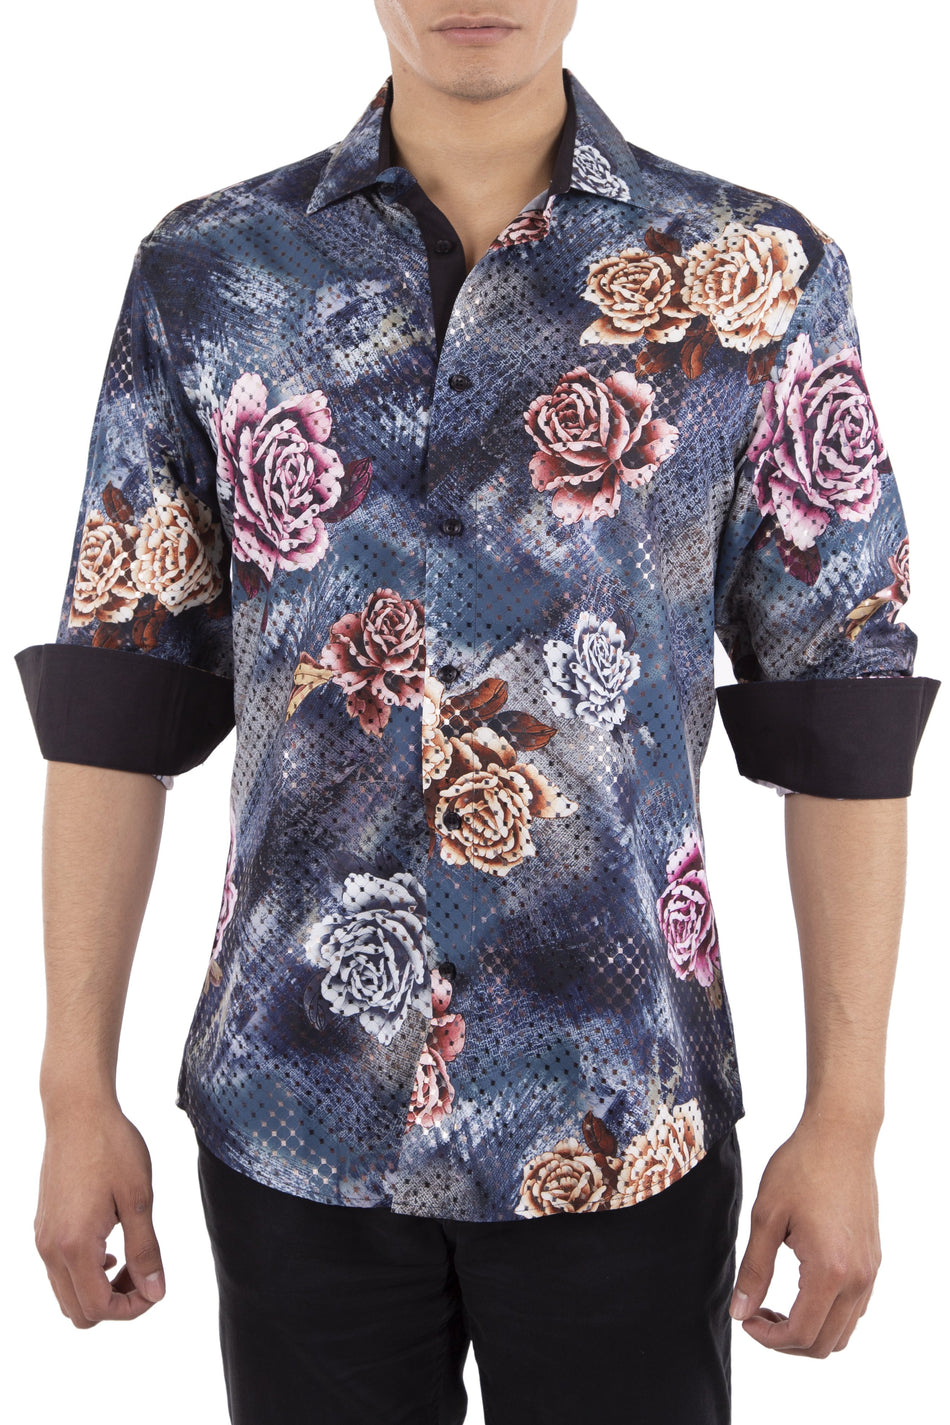 Men's Cyber Rose Navy Button Up Long Sleeve Dress Shirt